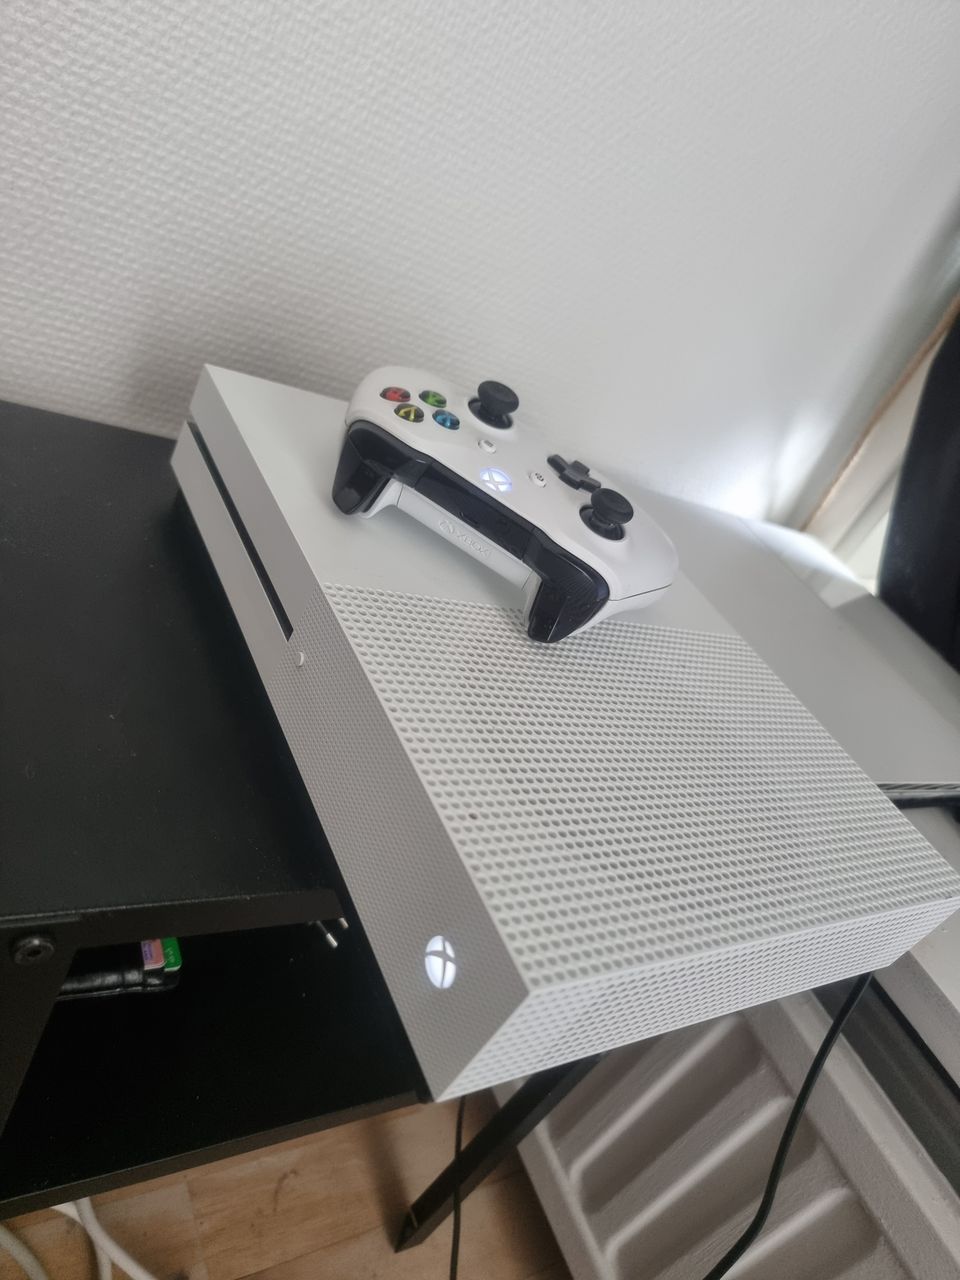 Xbox oneS